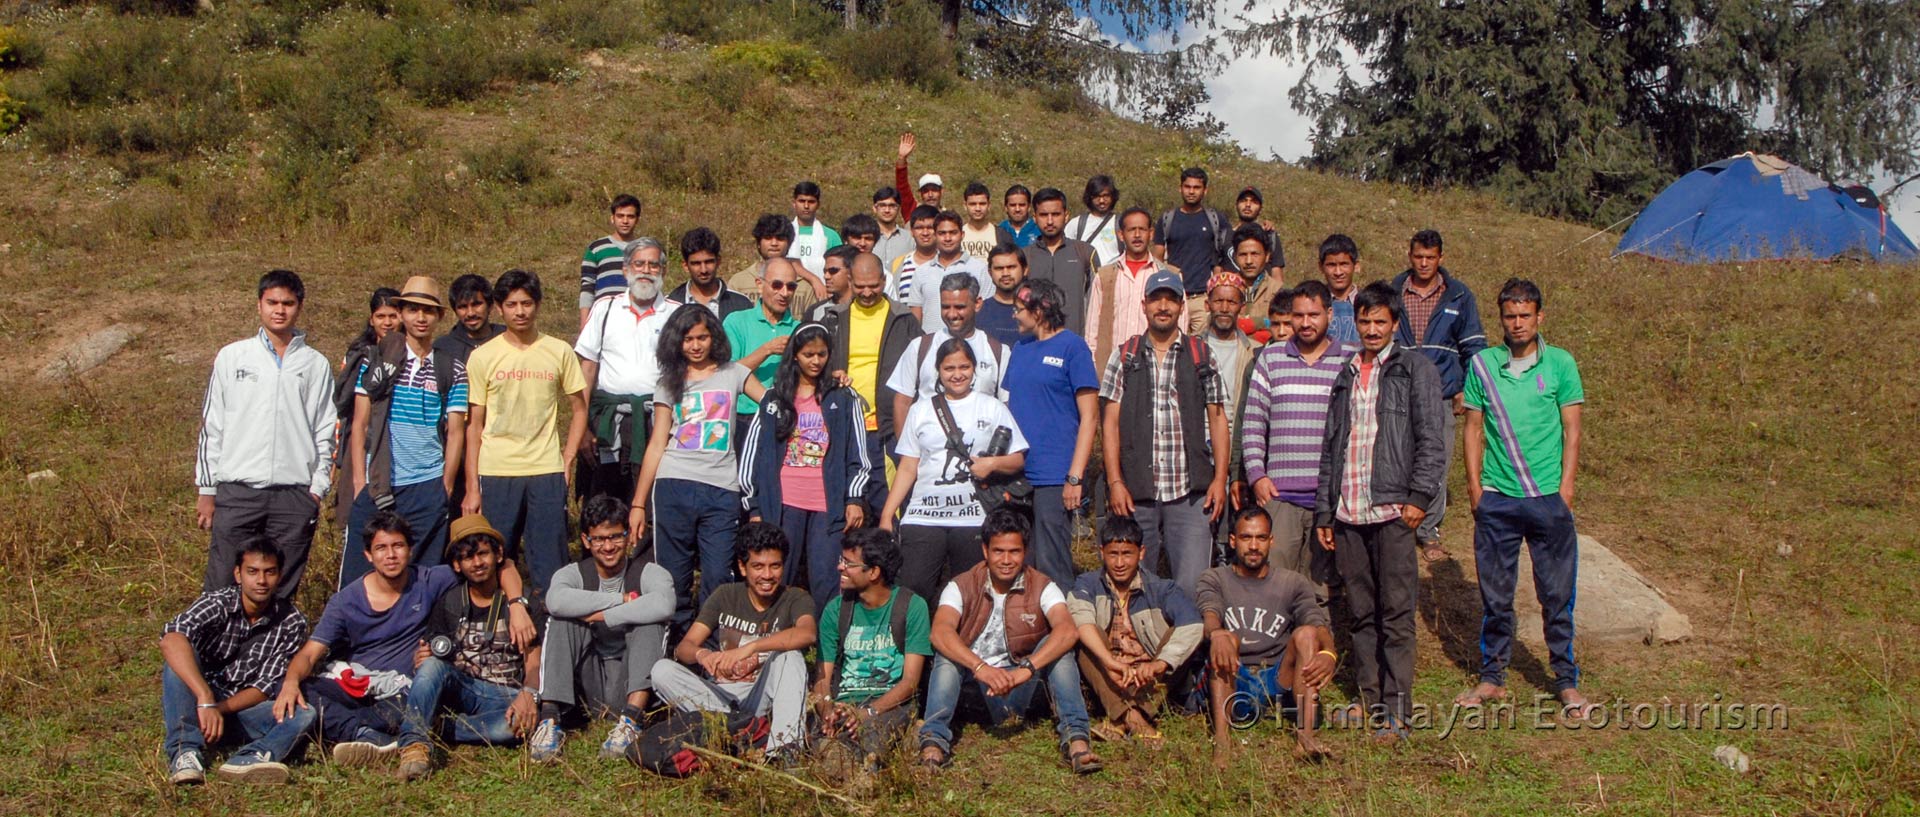 Student Group tour with Himalayan Ecotourism